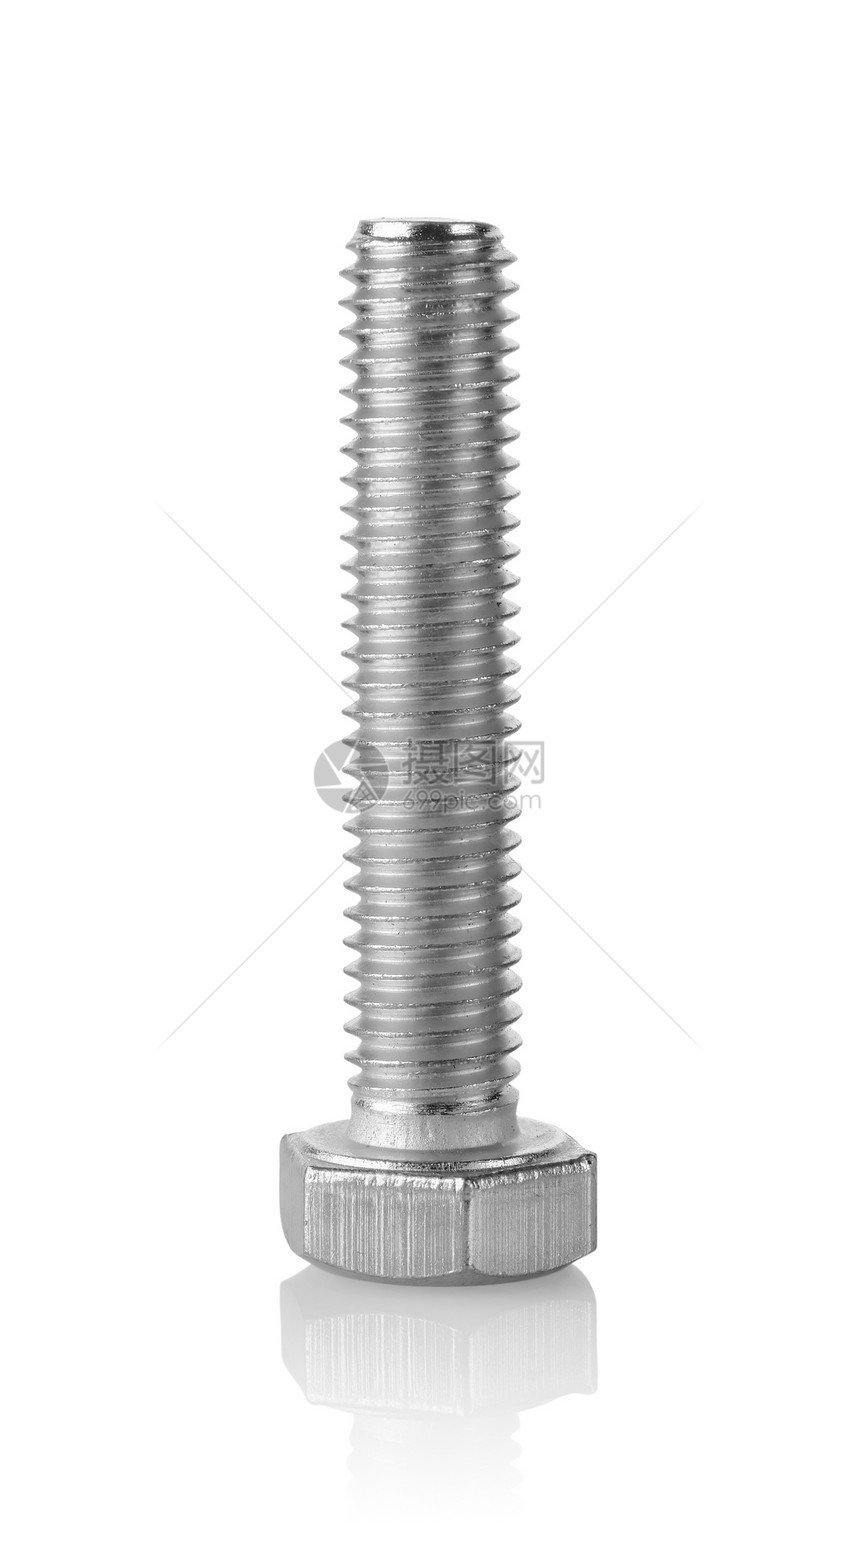 大螺宏观金属坚果力量螺栓图片